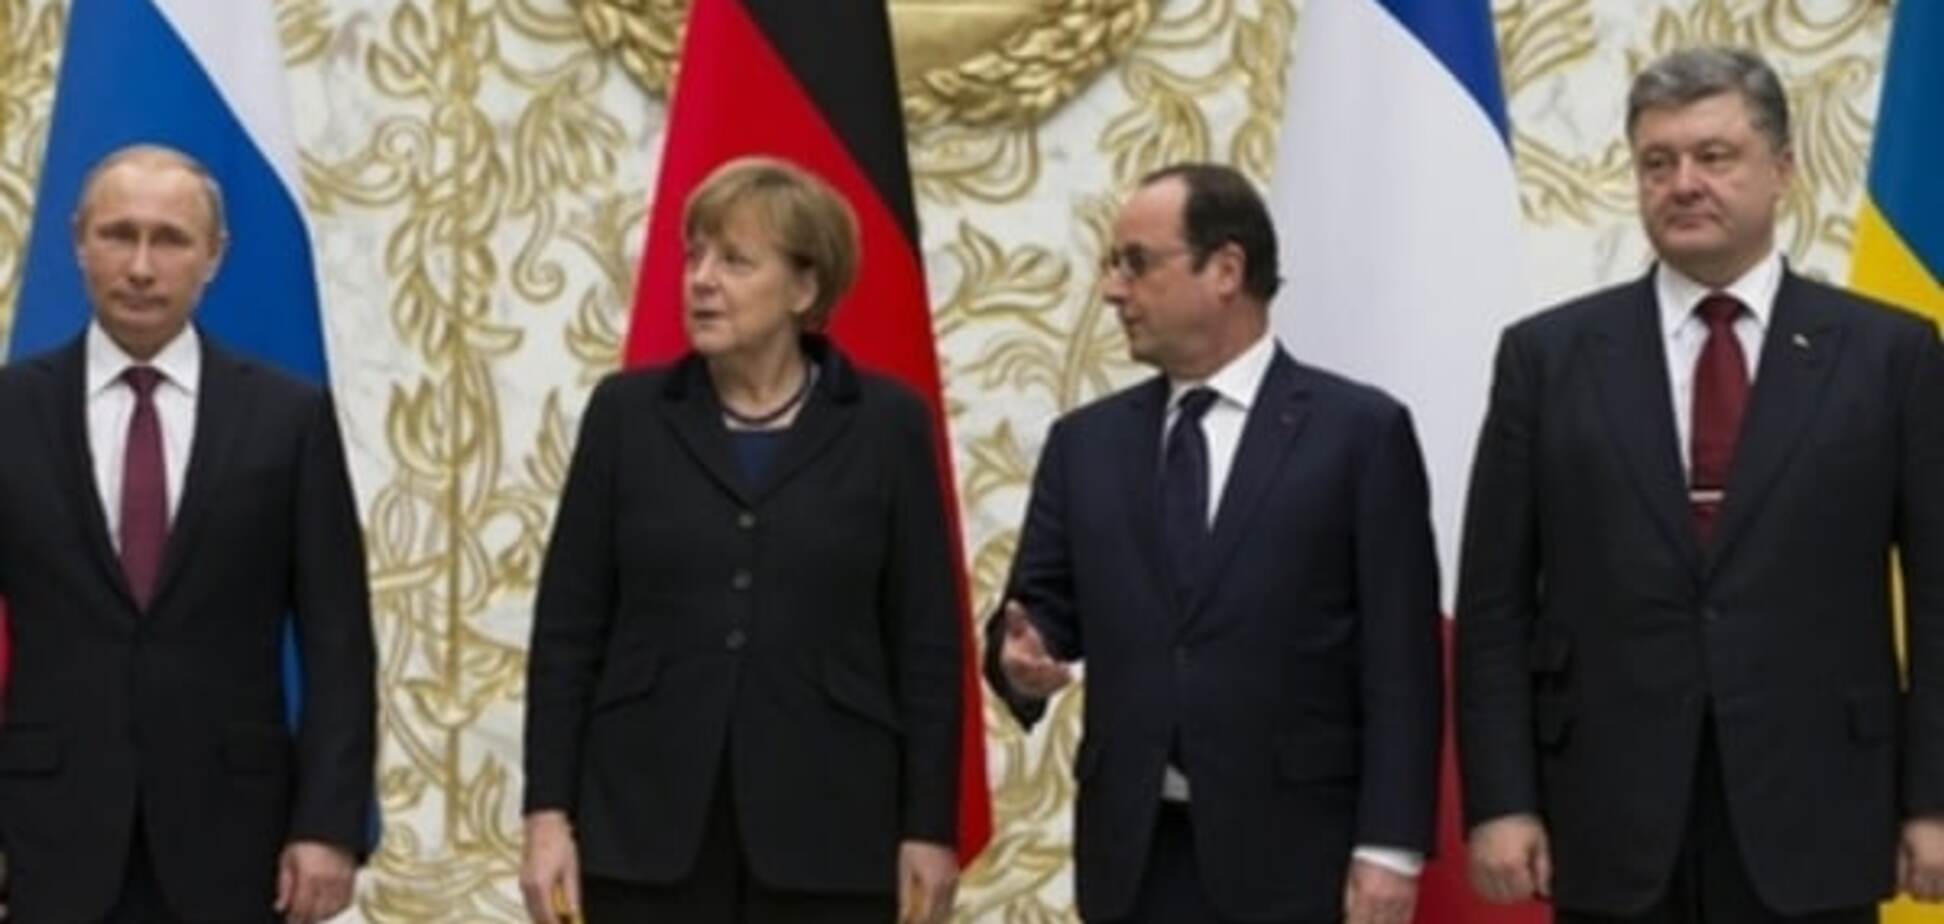 Порошенко и Меркель договорились о позициях на переговорах 'нормандской четверки'